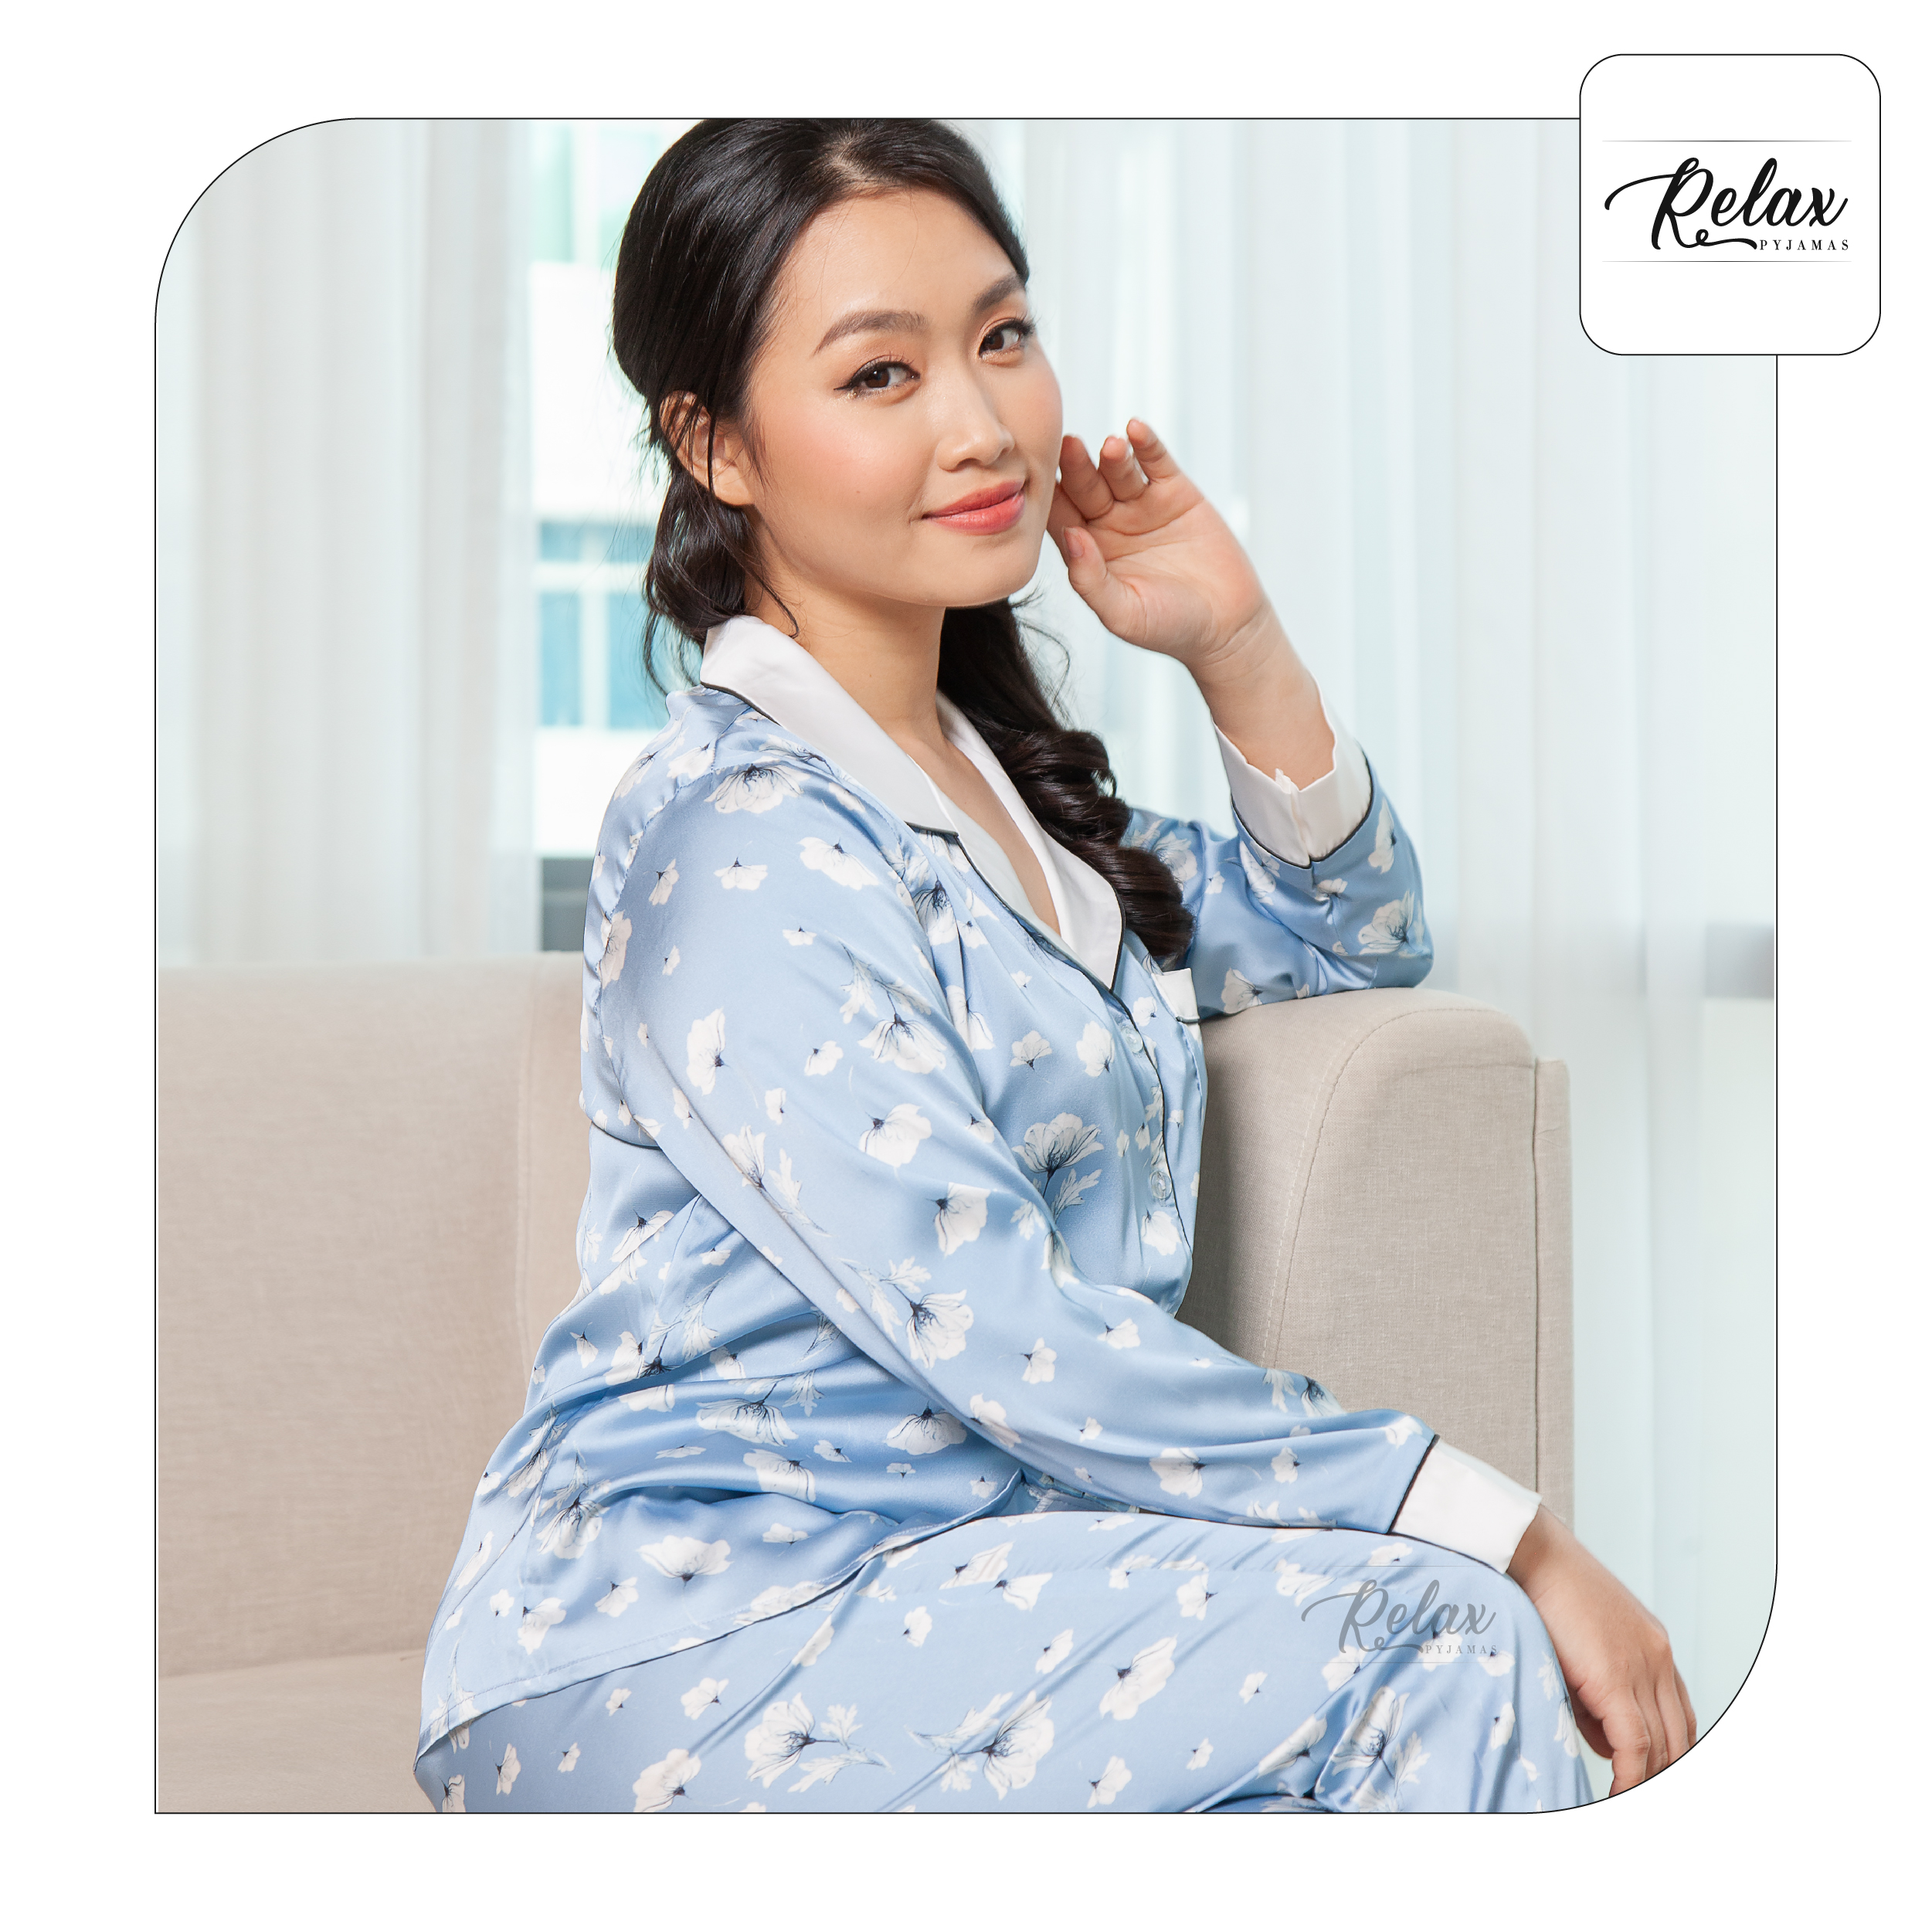 Đồ ngủ nữ pyjama tay dài quần dài họa tiết HW1004 đồ ngủ đẹp lụa Pháp cao cấp, mềm mịn - RELAX